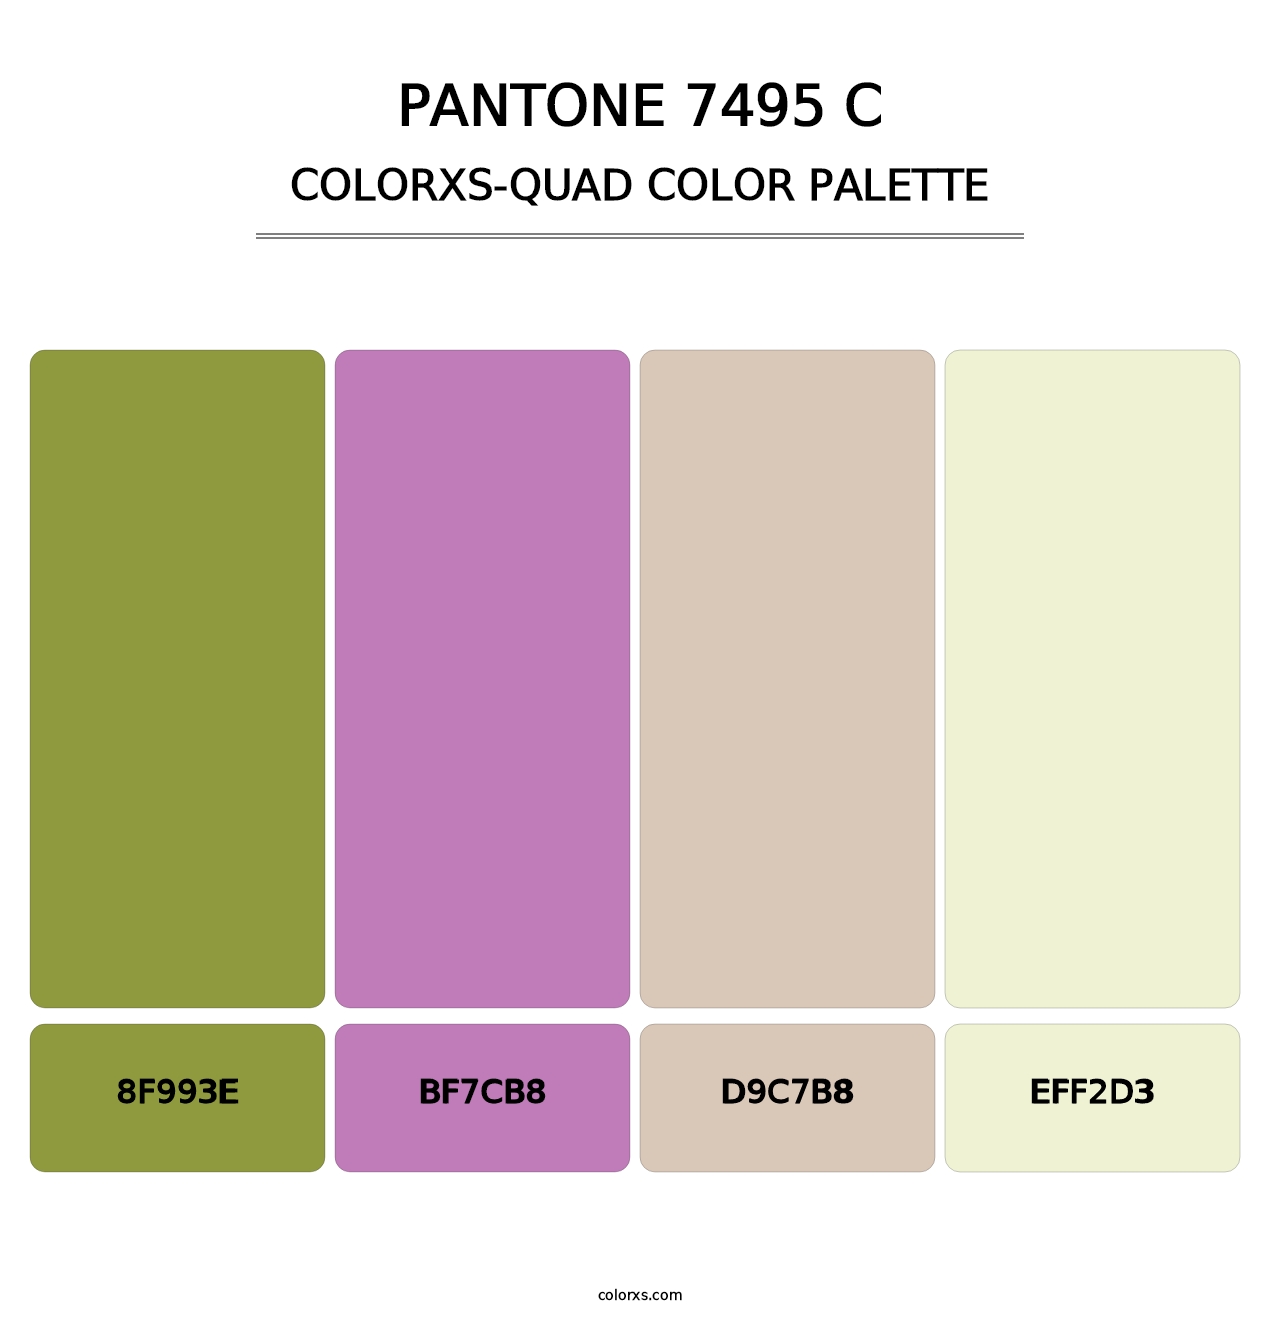 PANTONE 7495 C - Colorxs Quad Palette